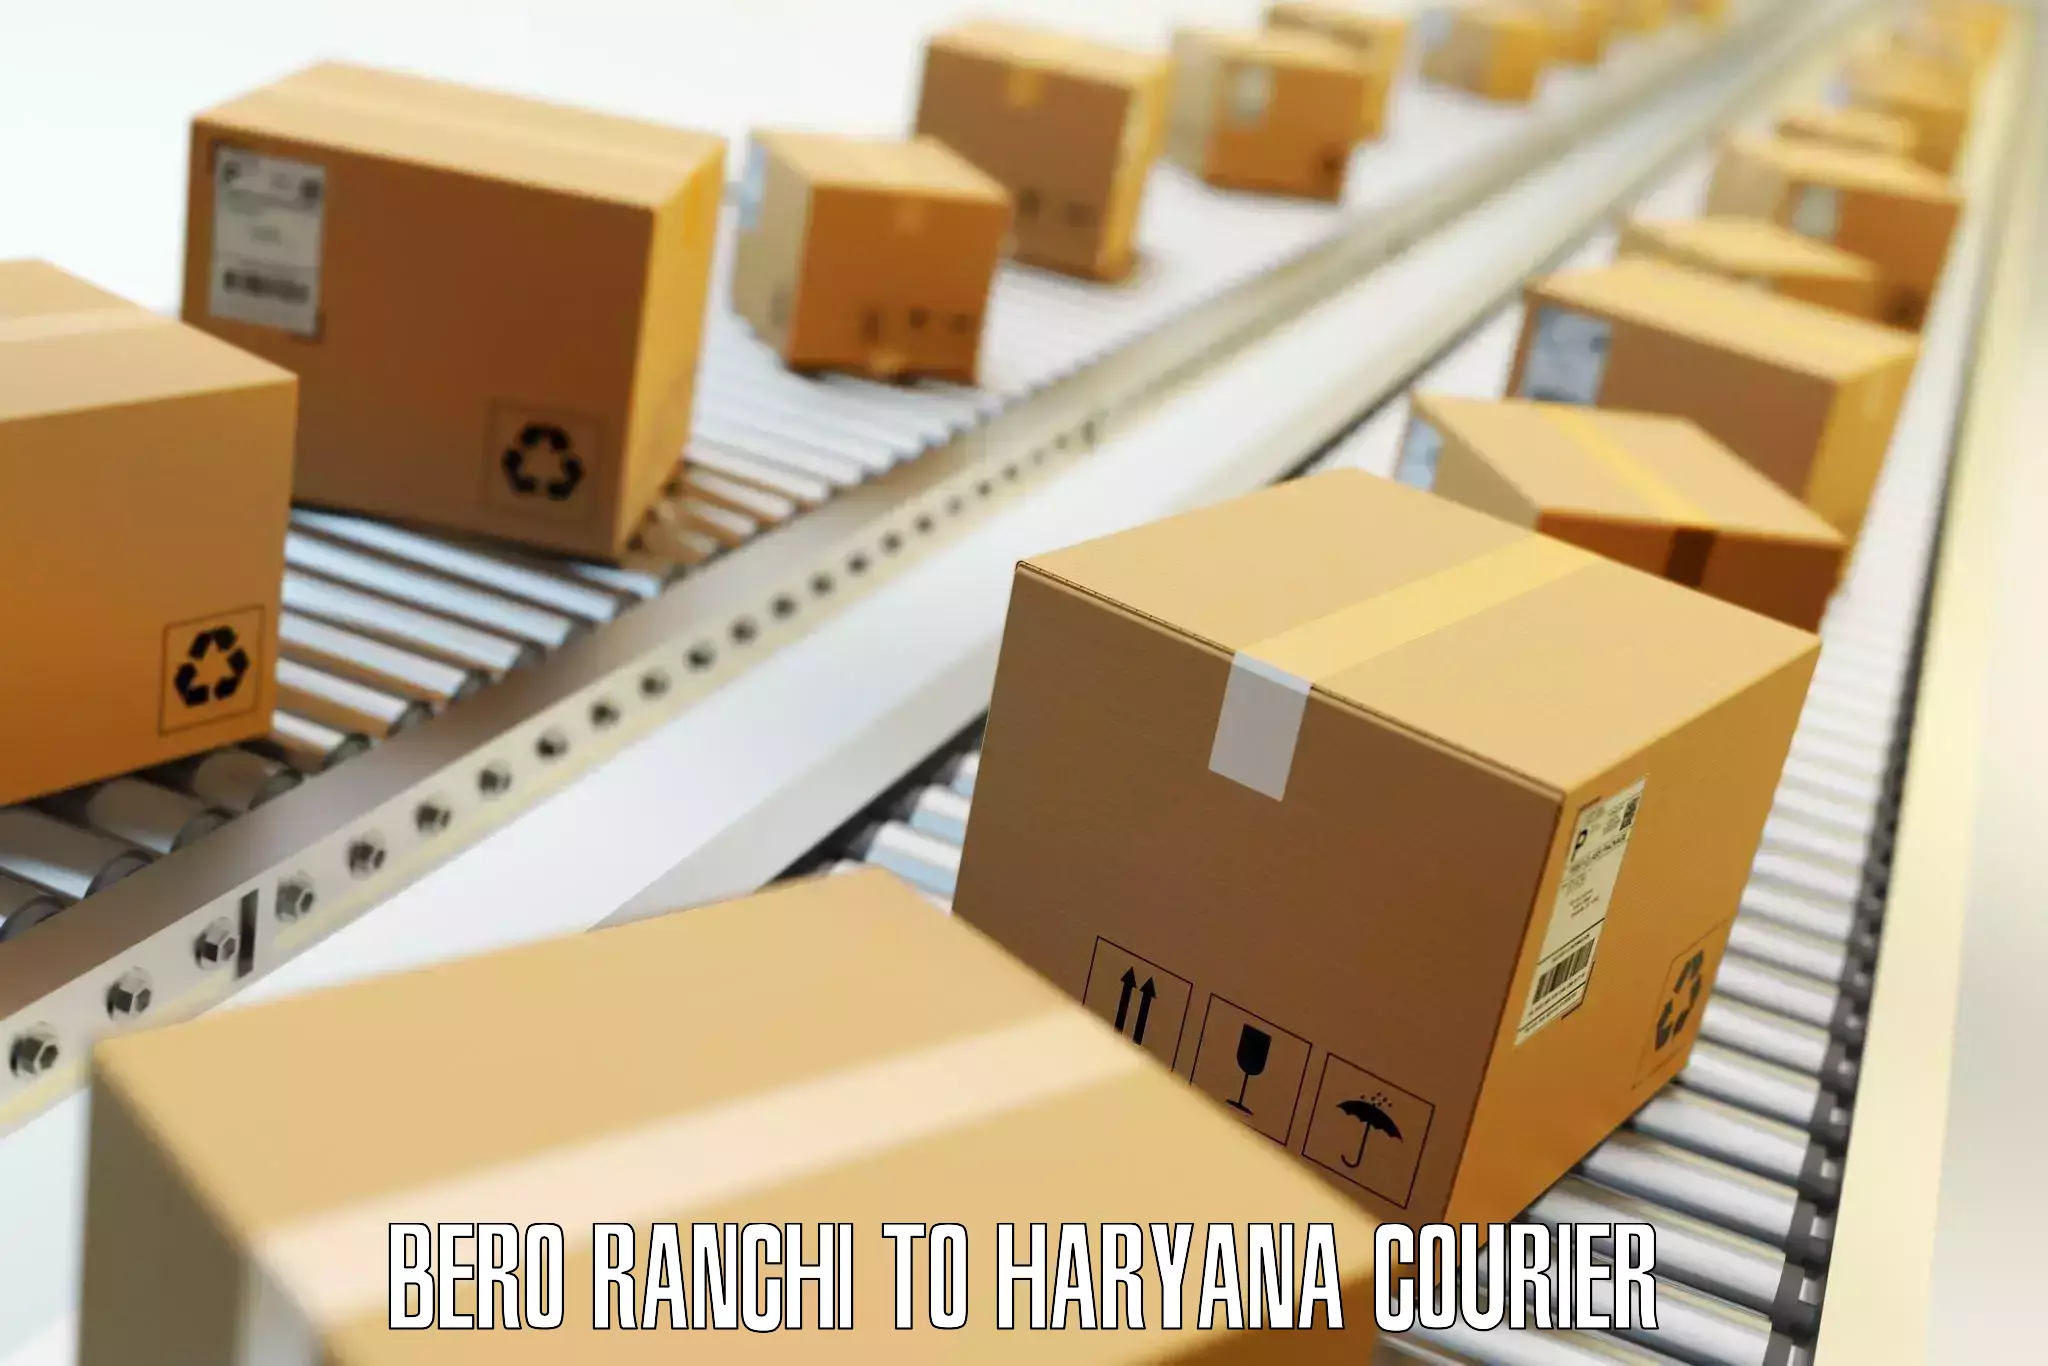 Baggage transport scheduler Bero Ranchi to Haryana